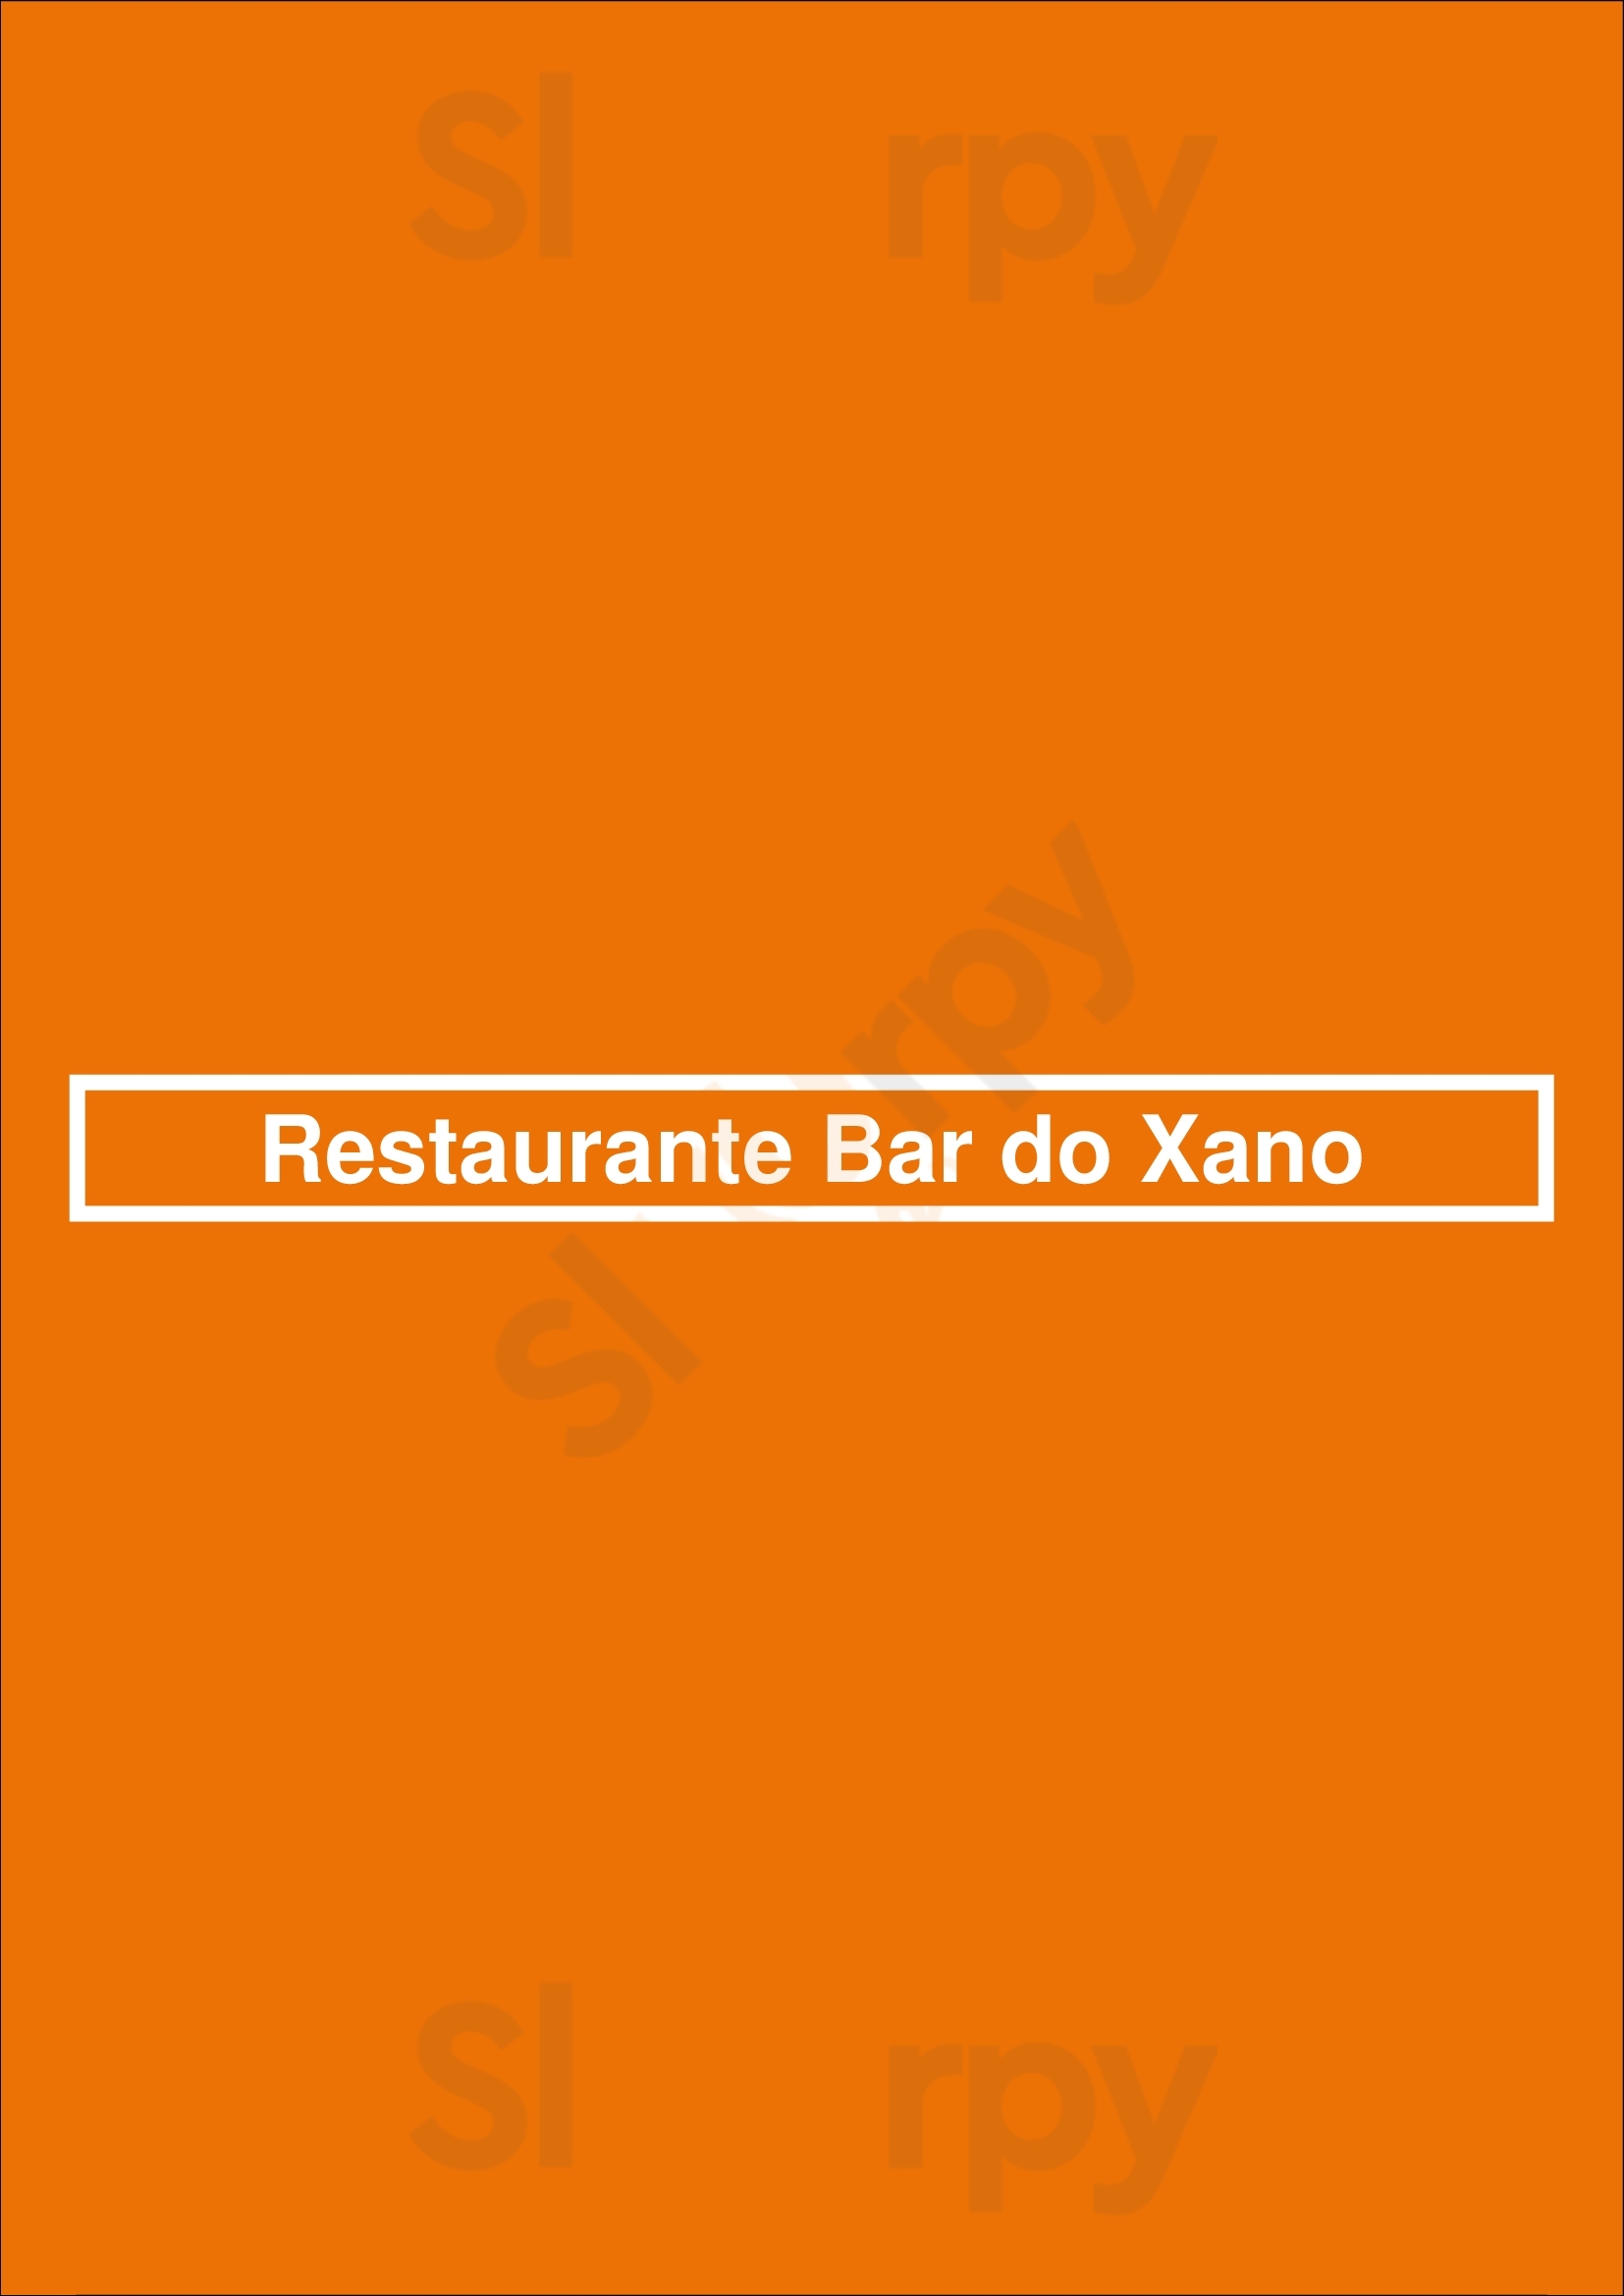 Restaurante Bar Do Xano Barcelos Menu - 1